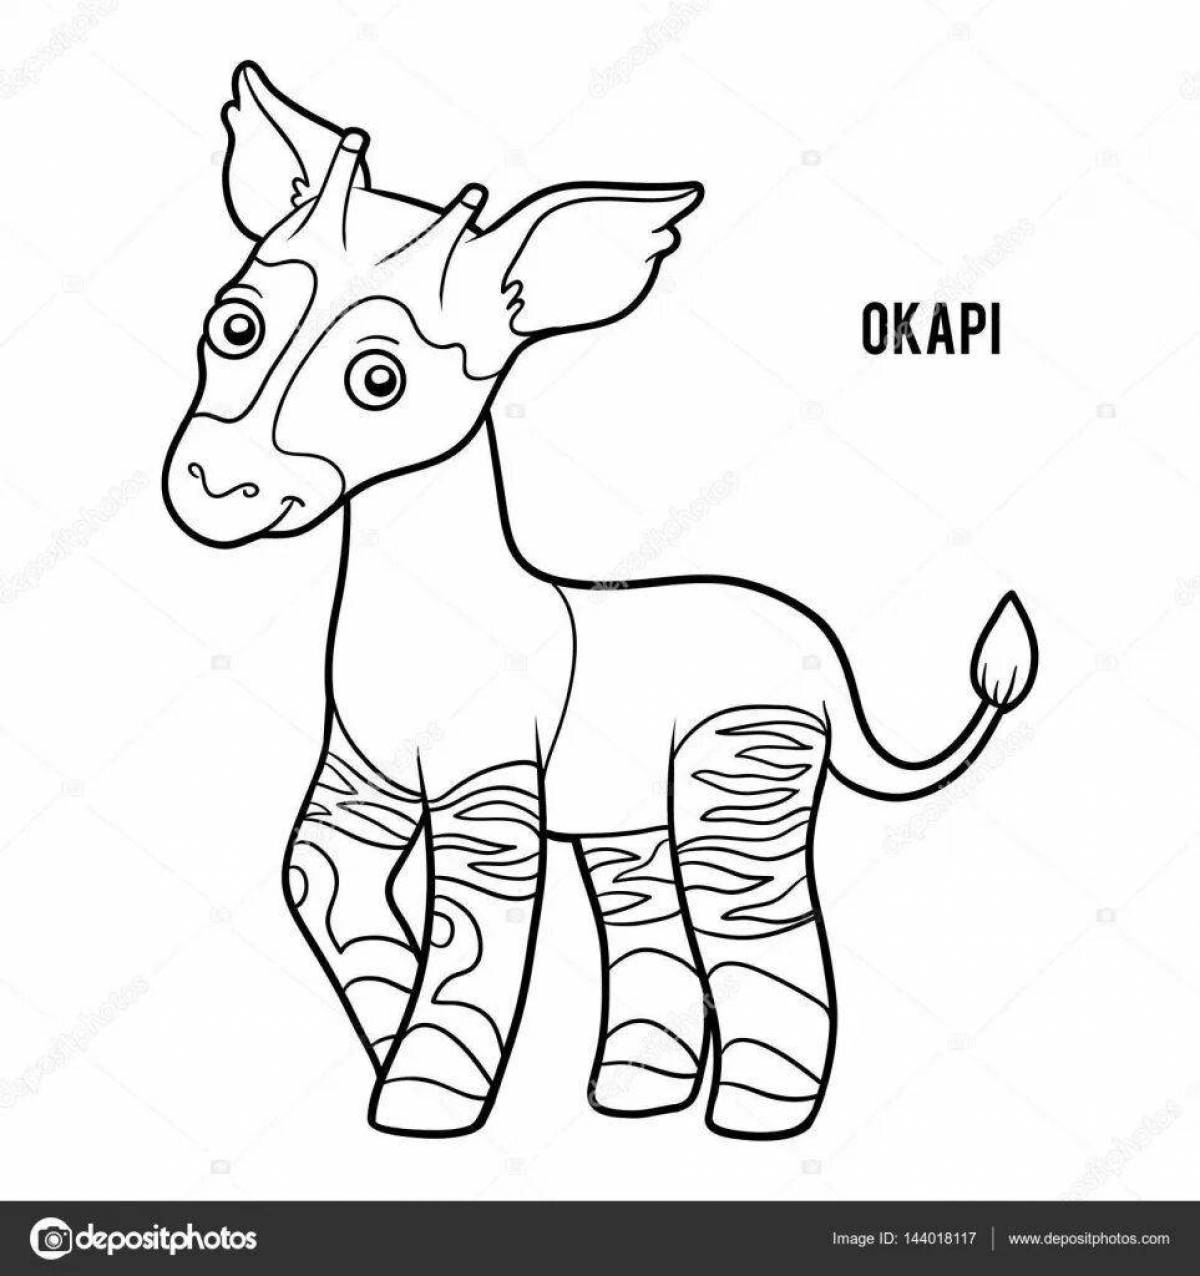 Violent okapi coloring book